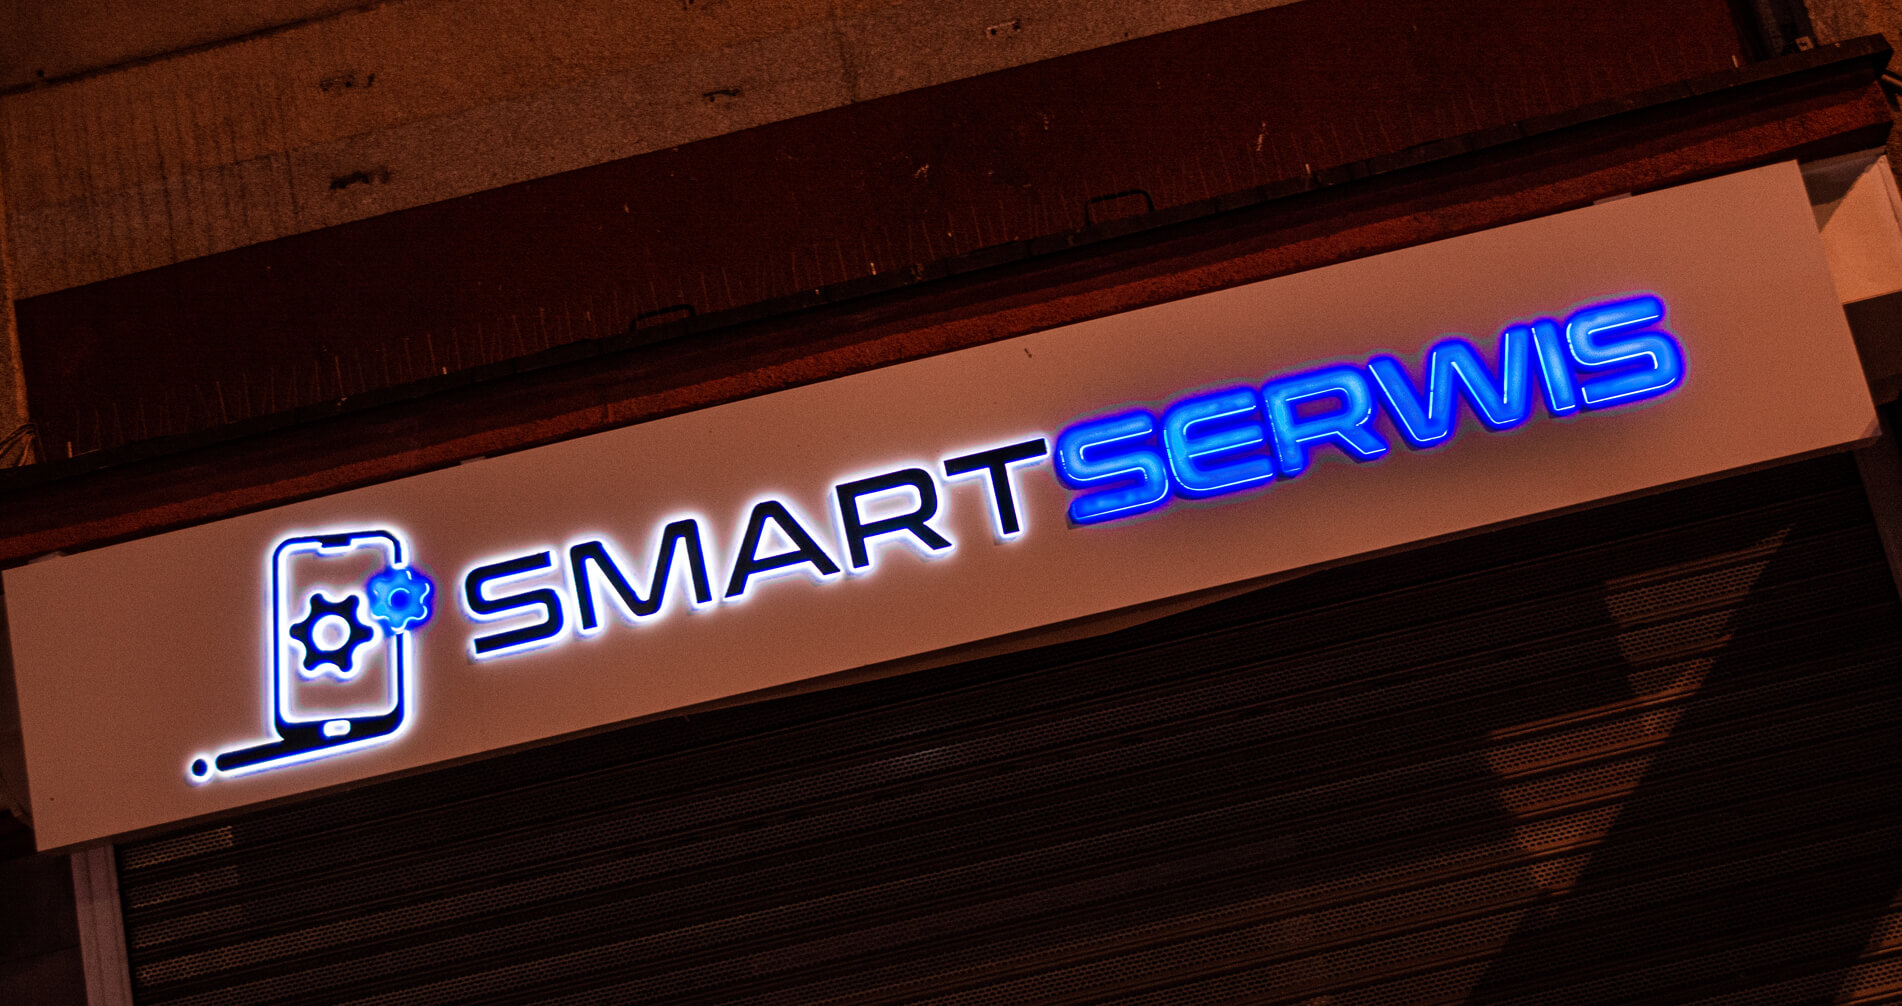 servizio intelligente - Smart Servis - pubblicità spaziale su un cassone posto sopra l'ingresso